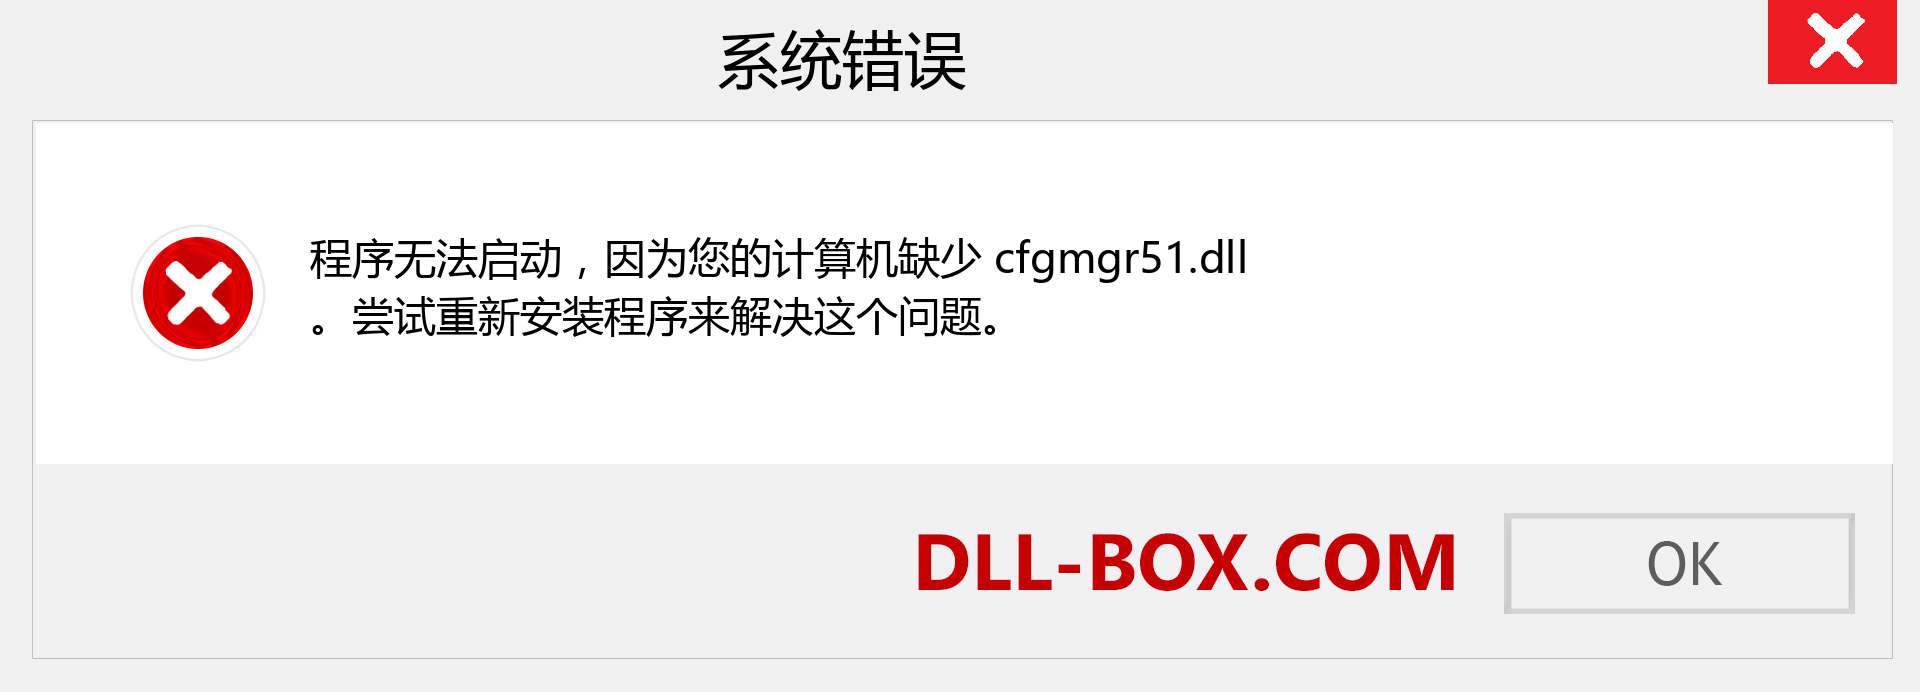 cfgmgr51.dll 文件丢失？。 适用于 Windows 7、8、10 的下载 - 修复 Windows、照片、图像上的 cfgmgr51 dll 丢失错误